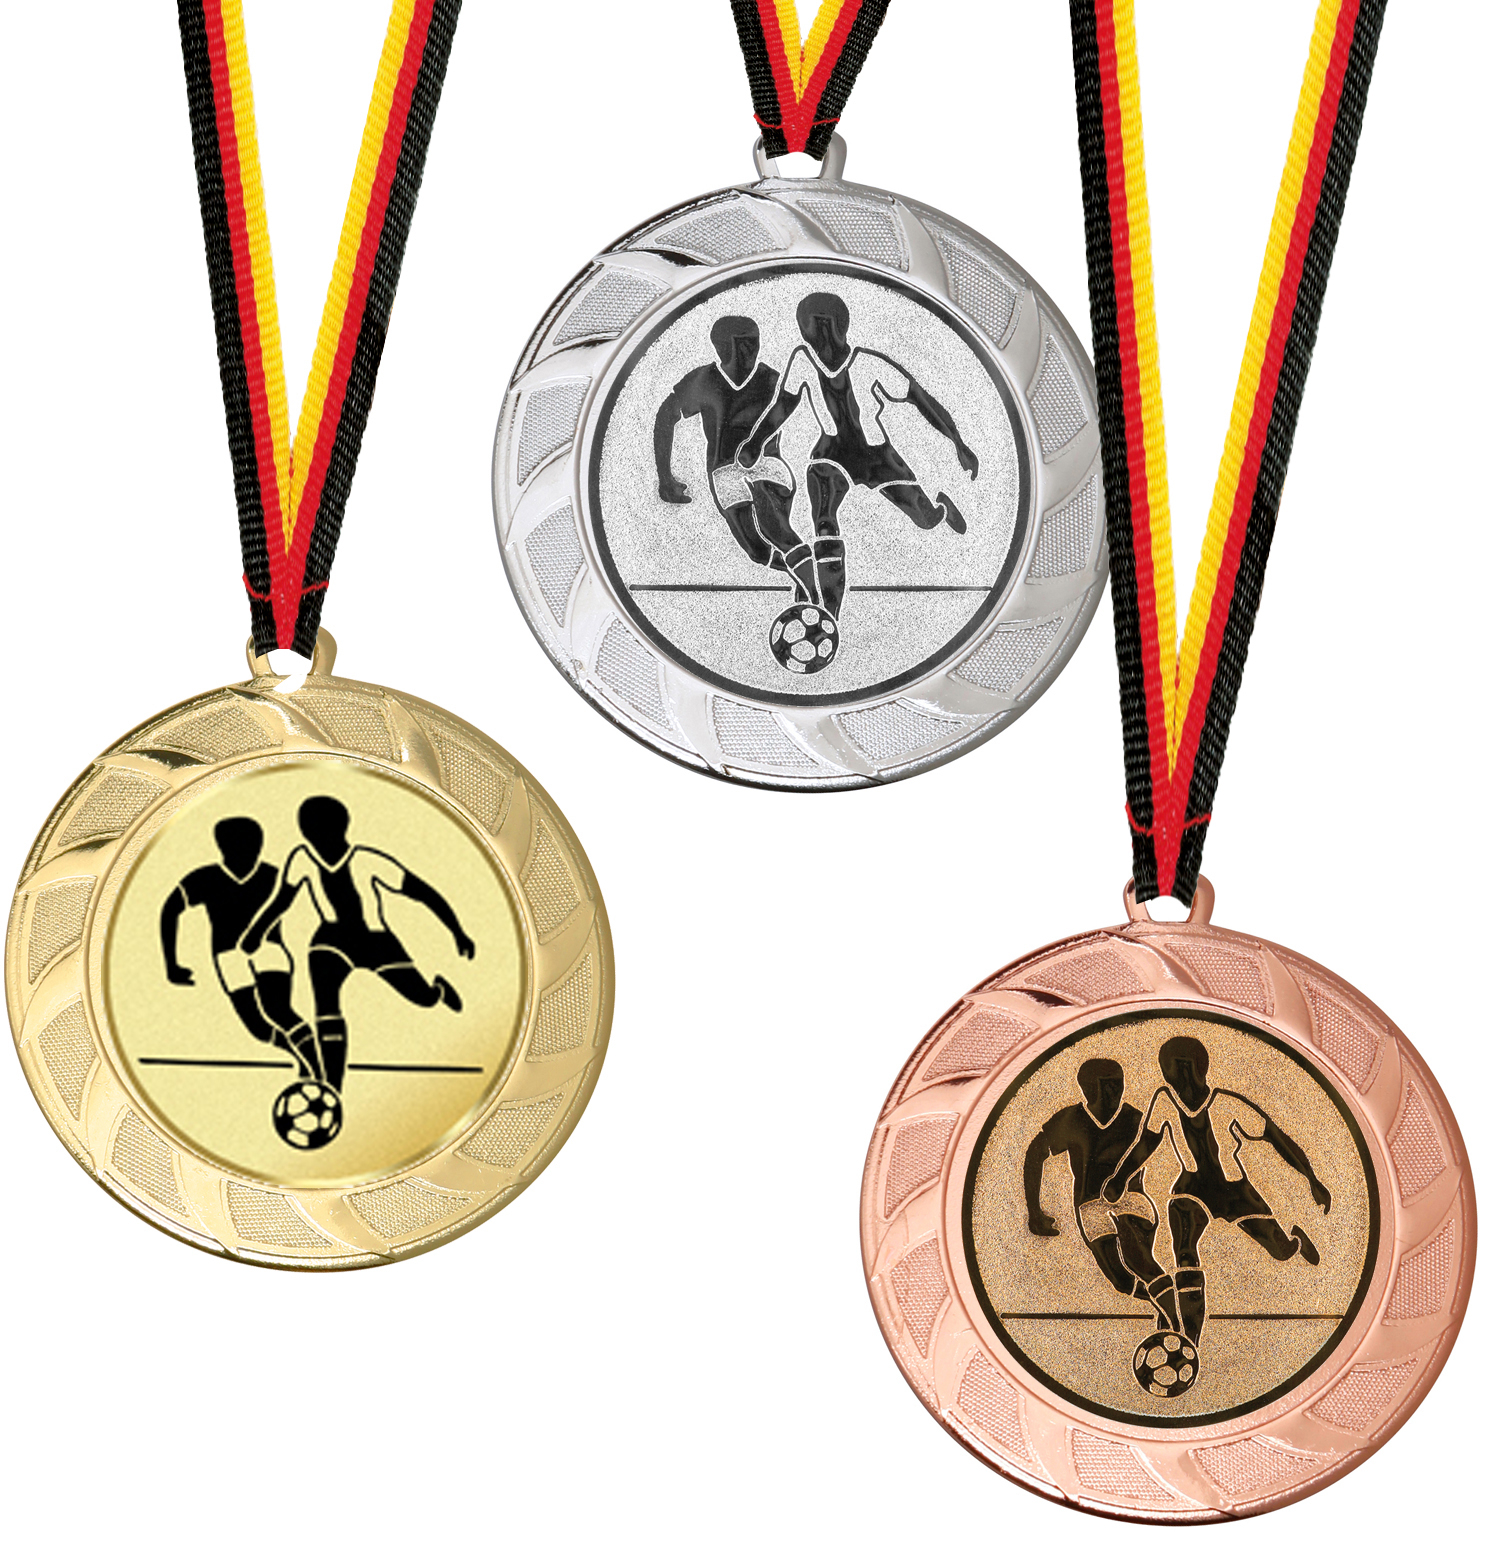 Angebot! Medaille für alle Sportarten 70mm Ø Medaillen Standardmedaillen 